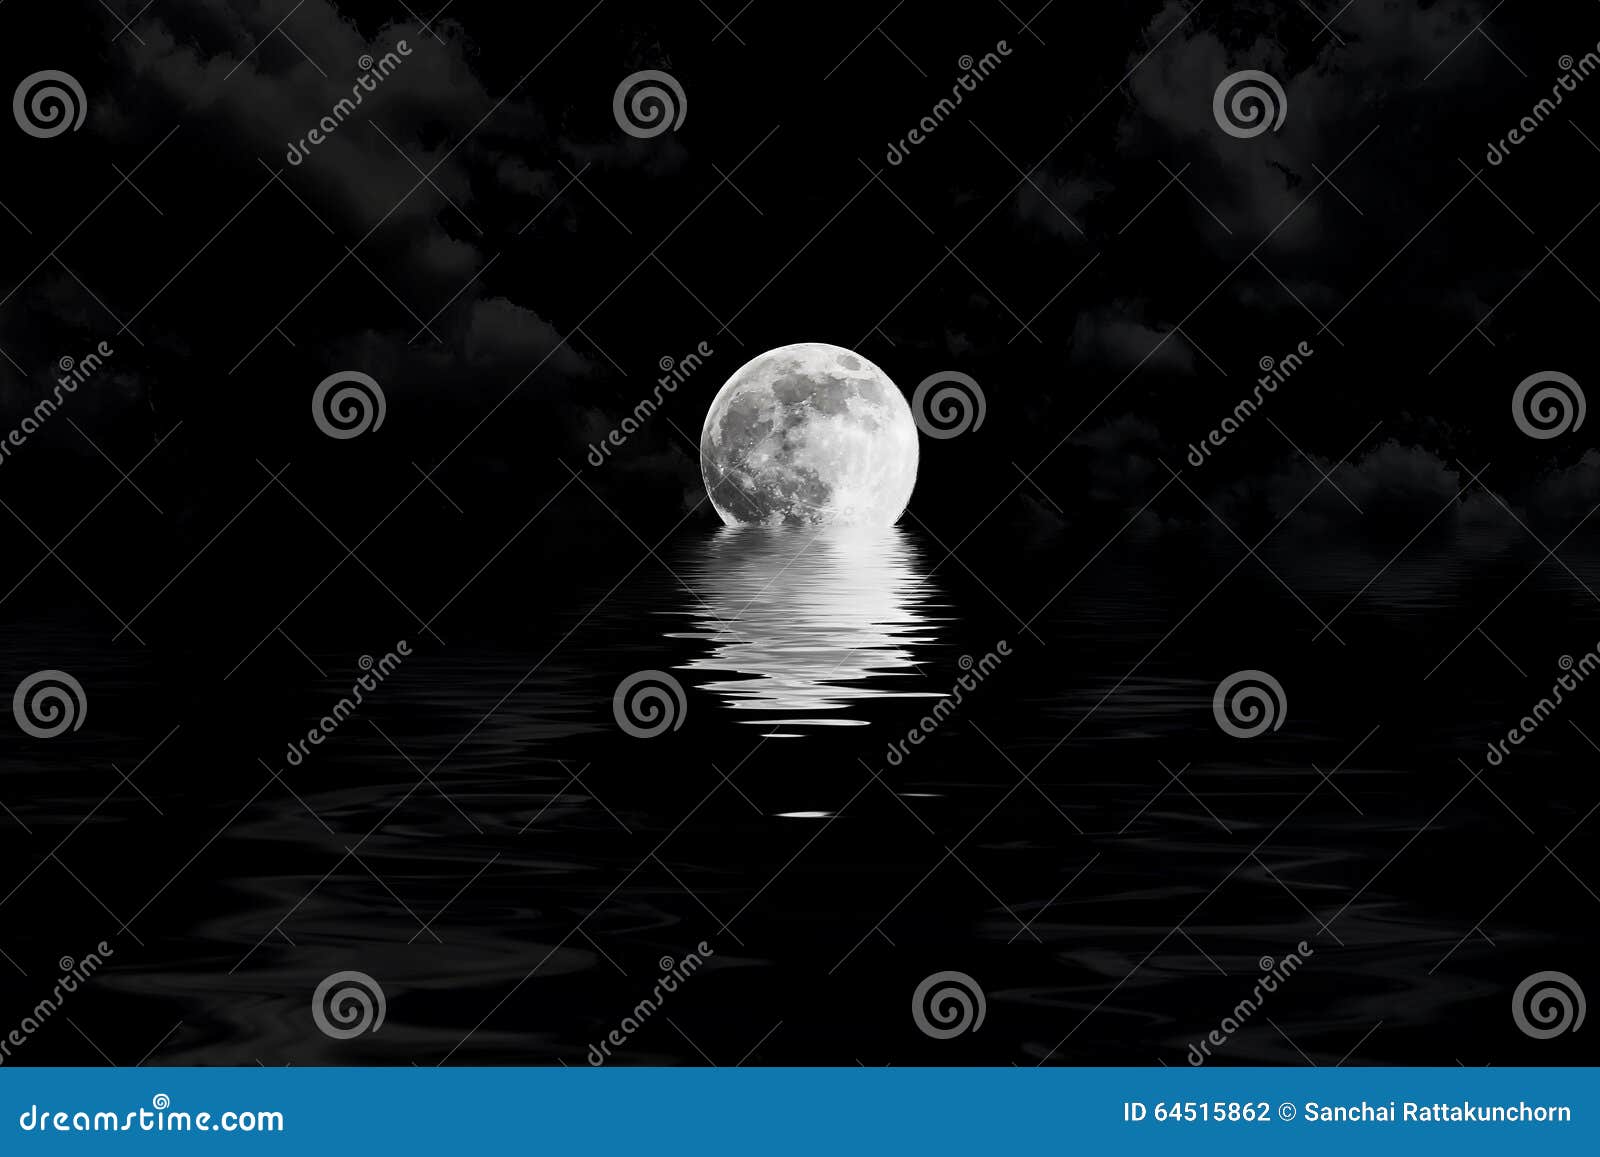 Pleine lune foncée en nuage avec la réflexion de l'eau. Pleine lune foncée en nuage avec le plan rapproché de réflexion de l'eau montrant les détails du lunaire